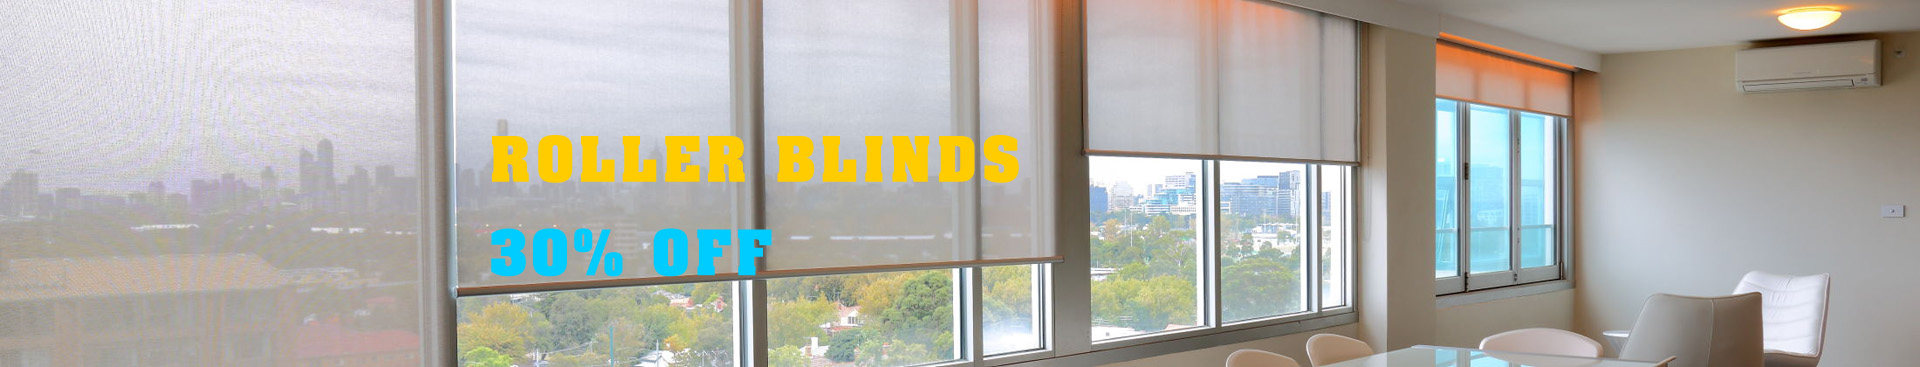 roller blinds Melbourne banner new